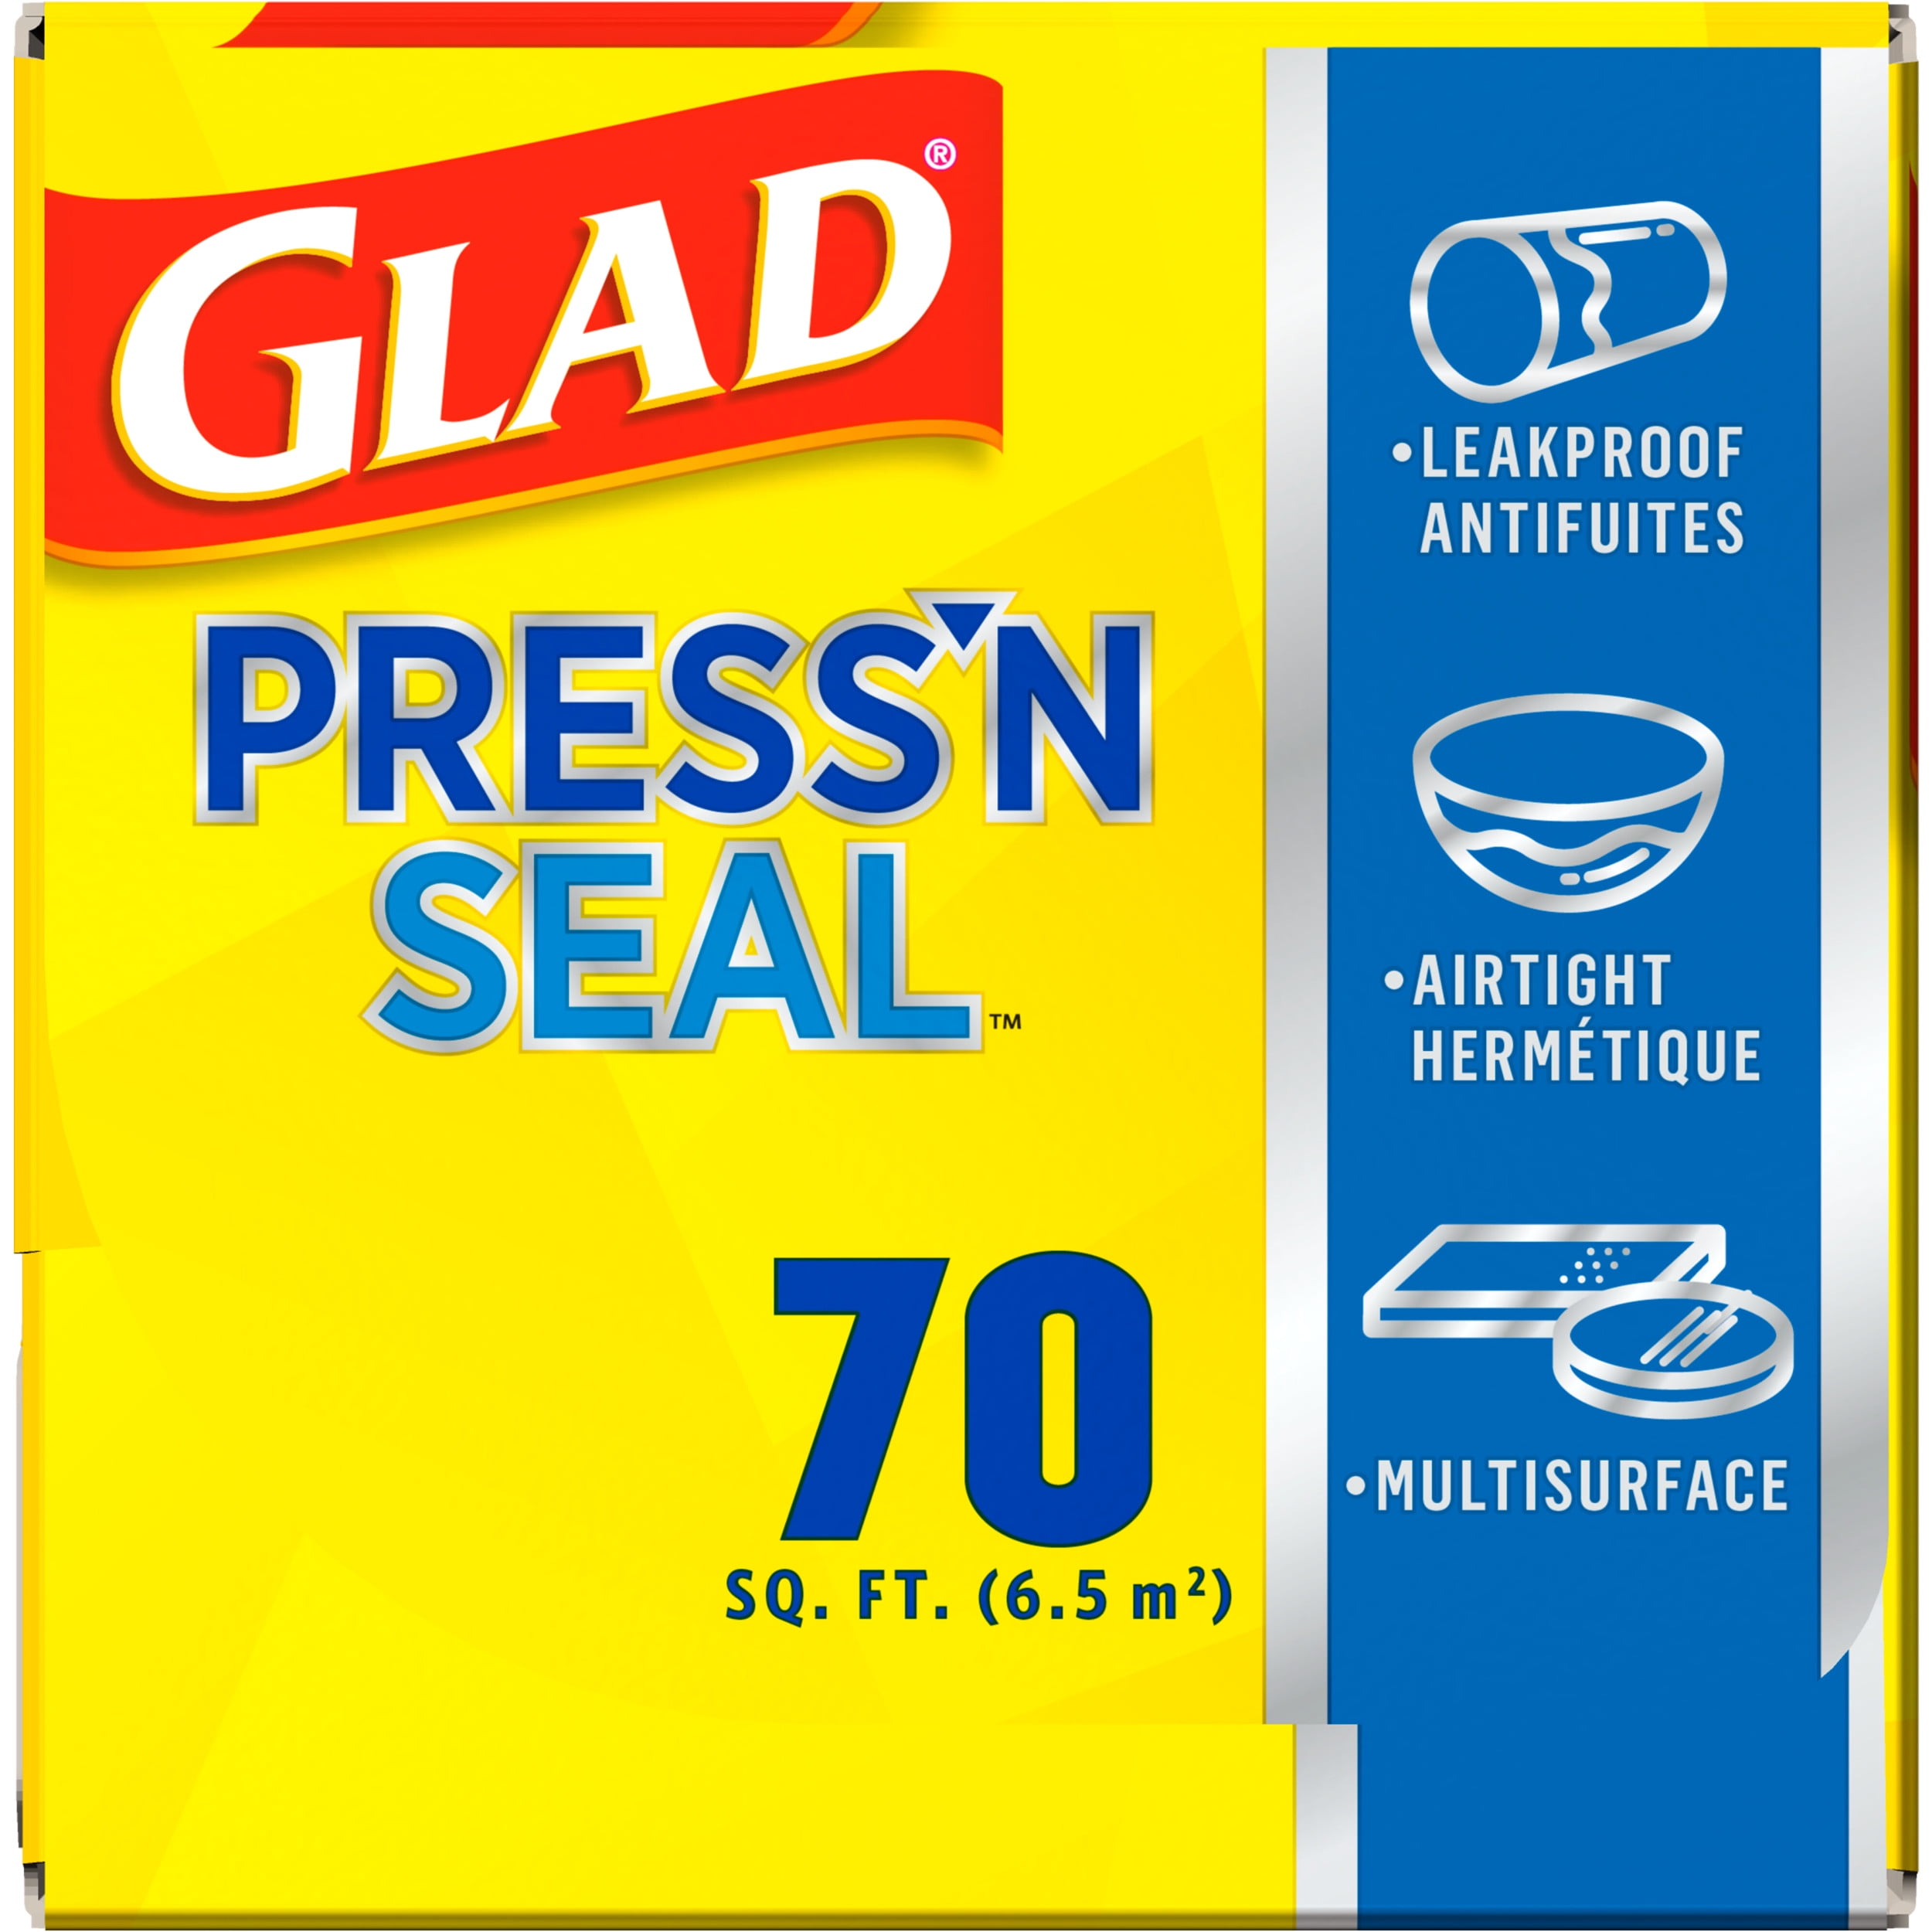 Press'n Seal Wrap by Glad at Fleet Farm